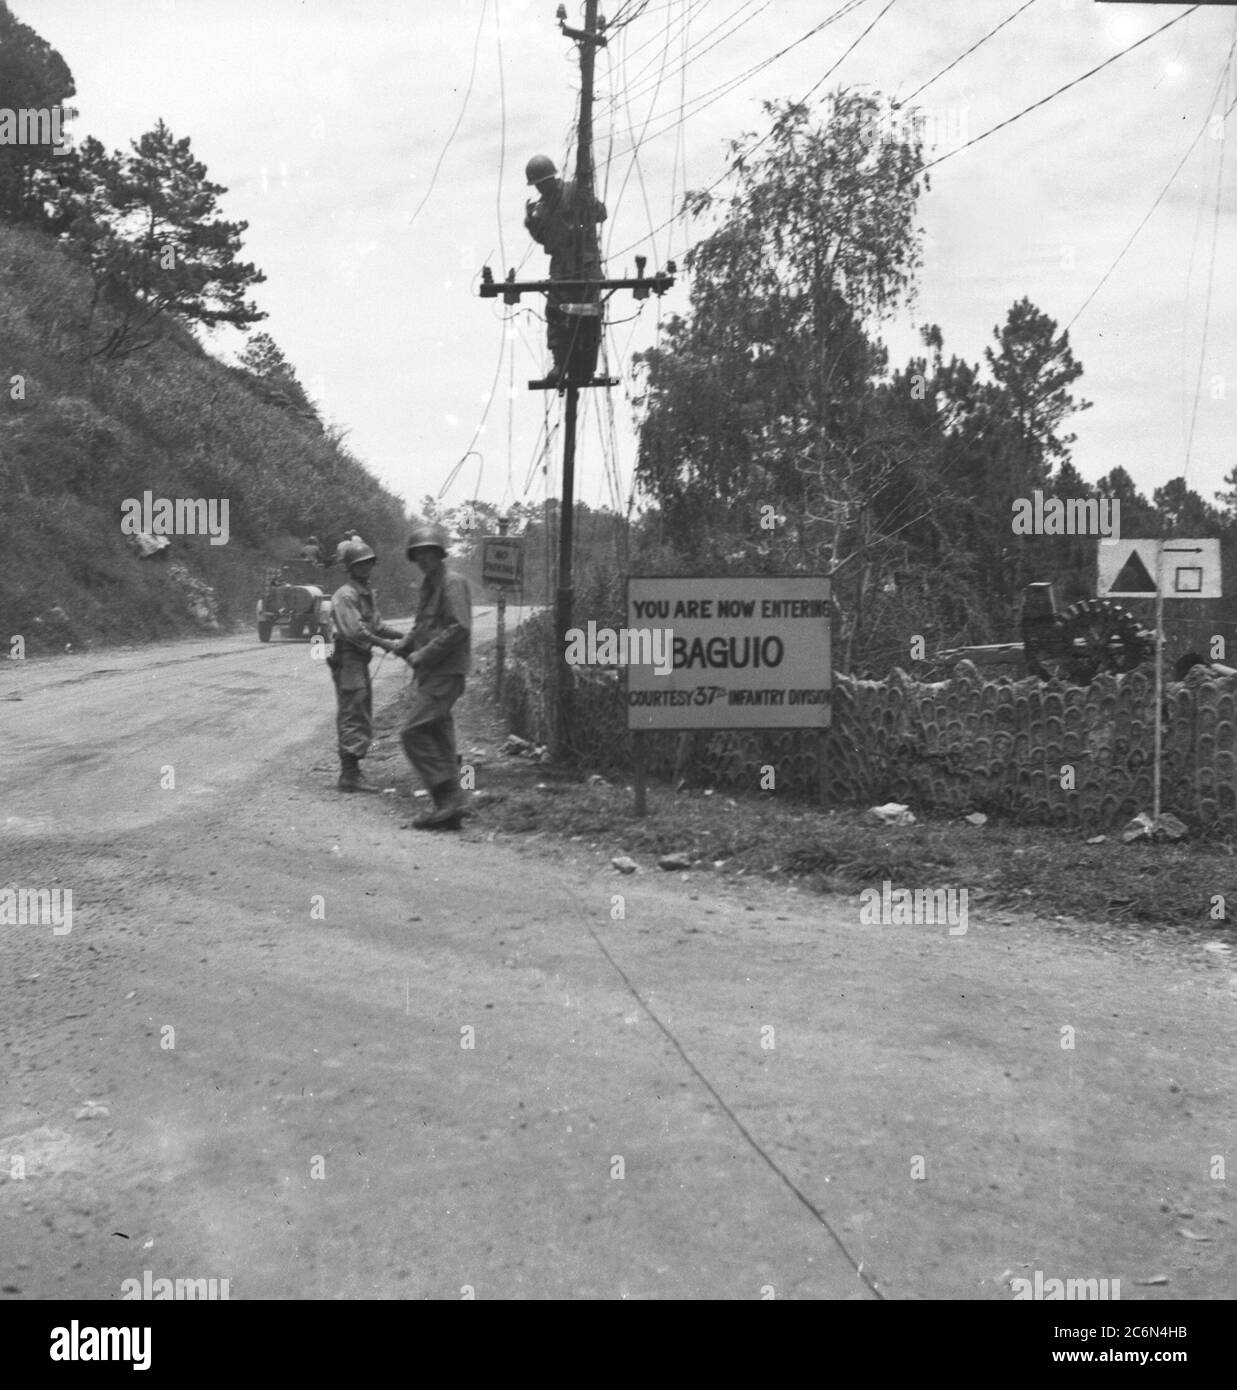 Un panneau indiquant « vous entrez maintenant dans Baguio, courtoisie 37e Division d’infanterie » salue les soldats de la 33ème Division d’infanterie alors qu’ils entrent à Baguio, Luzon, aux îles Philippines, le 27 avril 1945 Banque D'Images